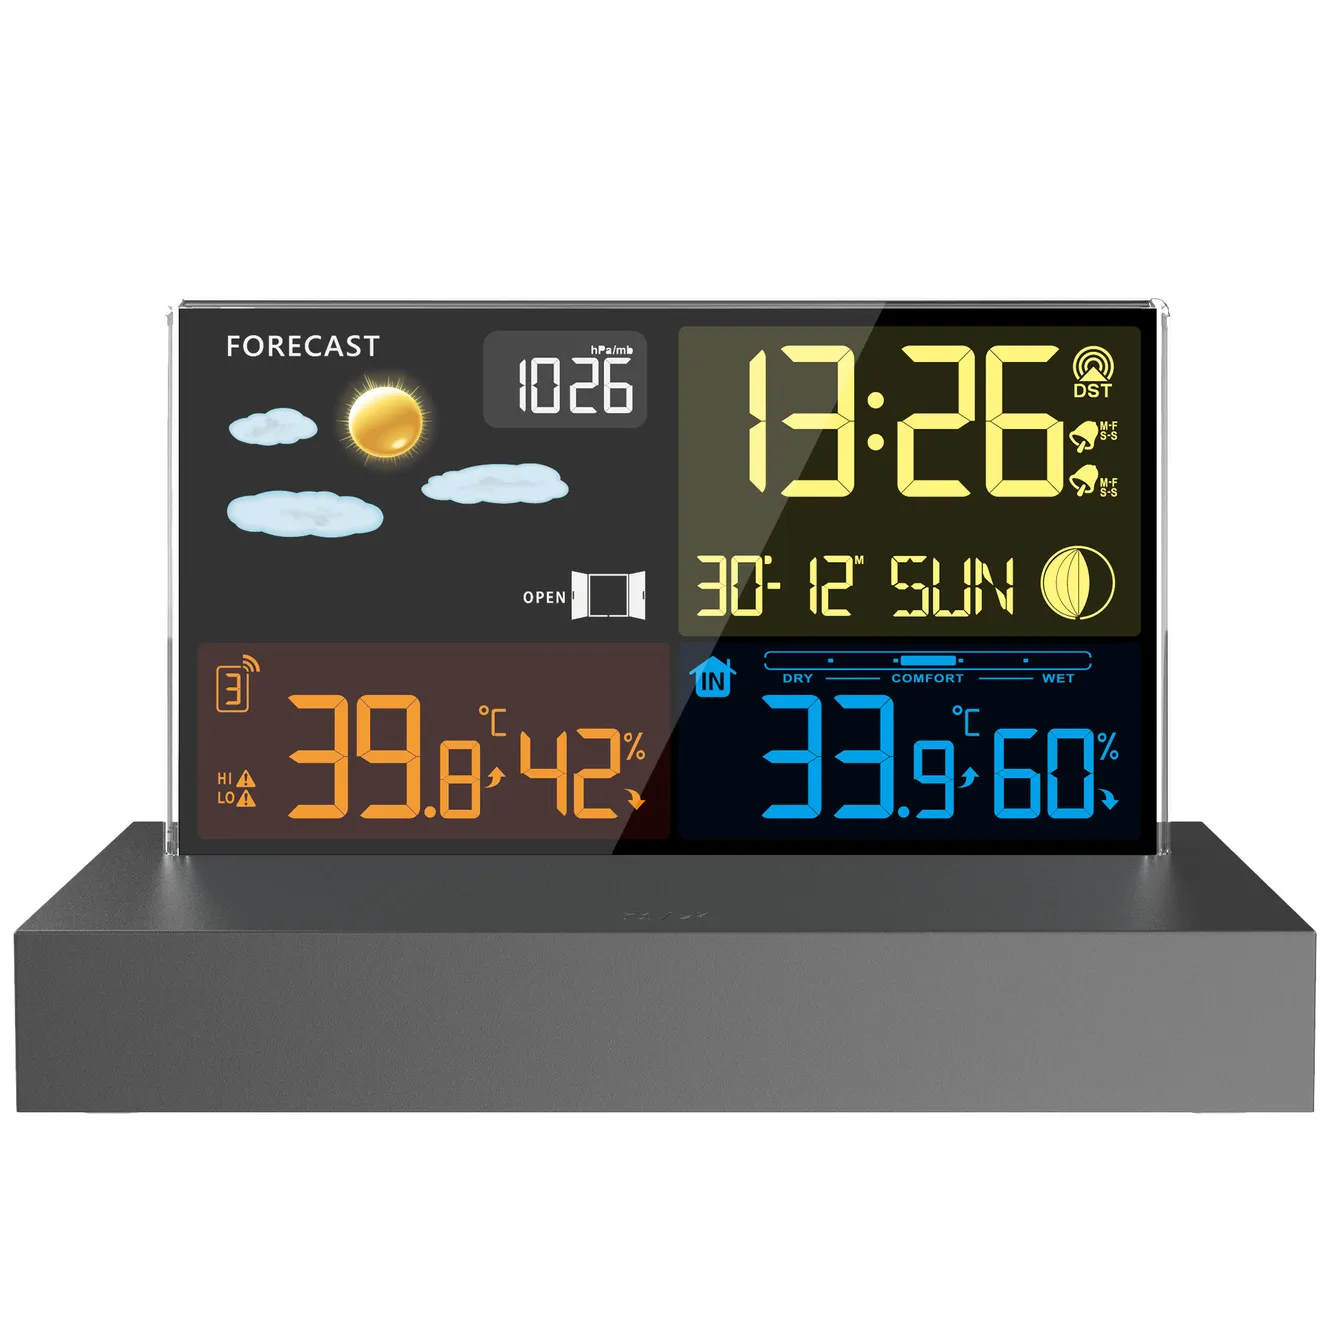 مقياس حرارة أوتوماتيكي لمحطة الطقس مقياس رطوبة إلكترونيات طاولة سطح المكتب منبه بطارية جهاز استشعار لاسلكي للطقس